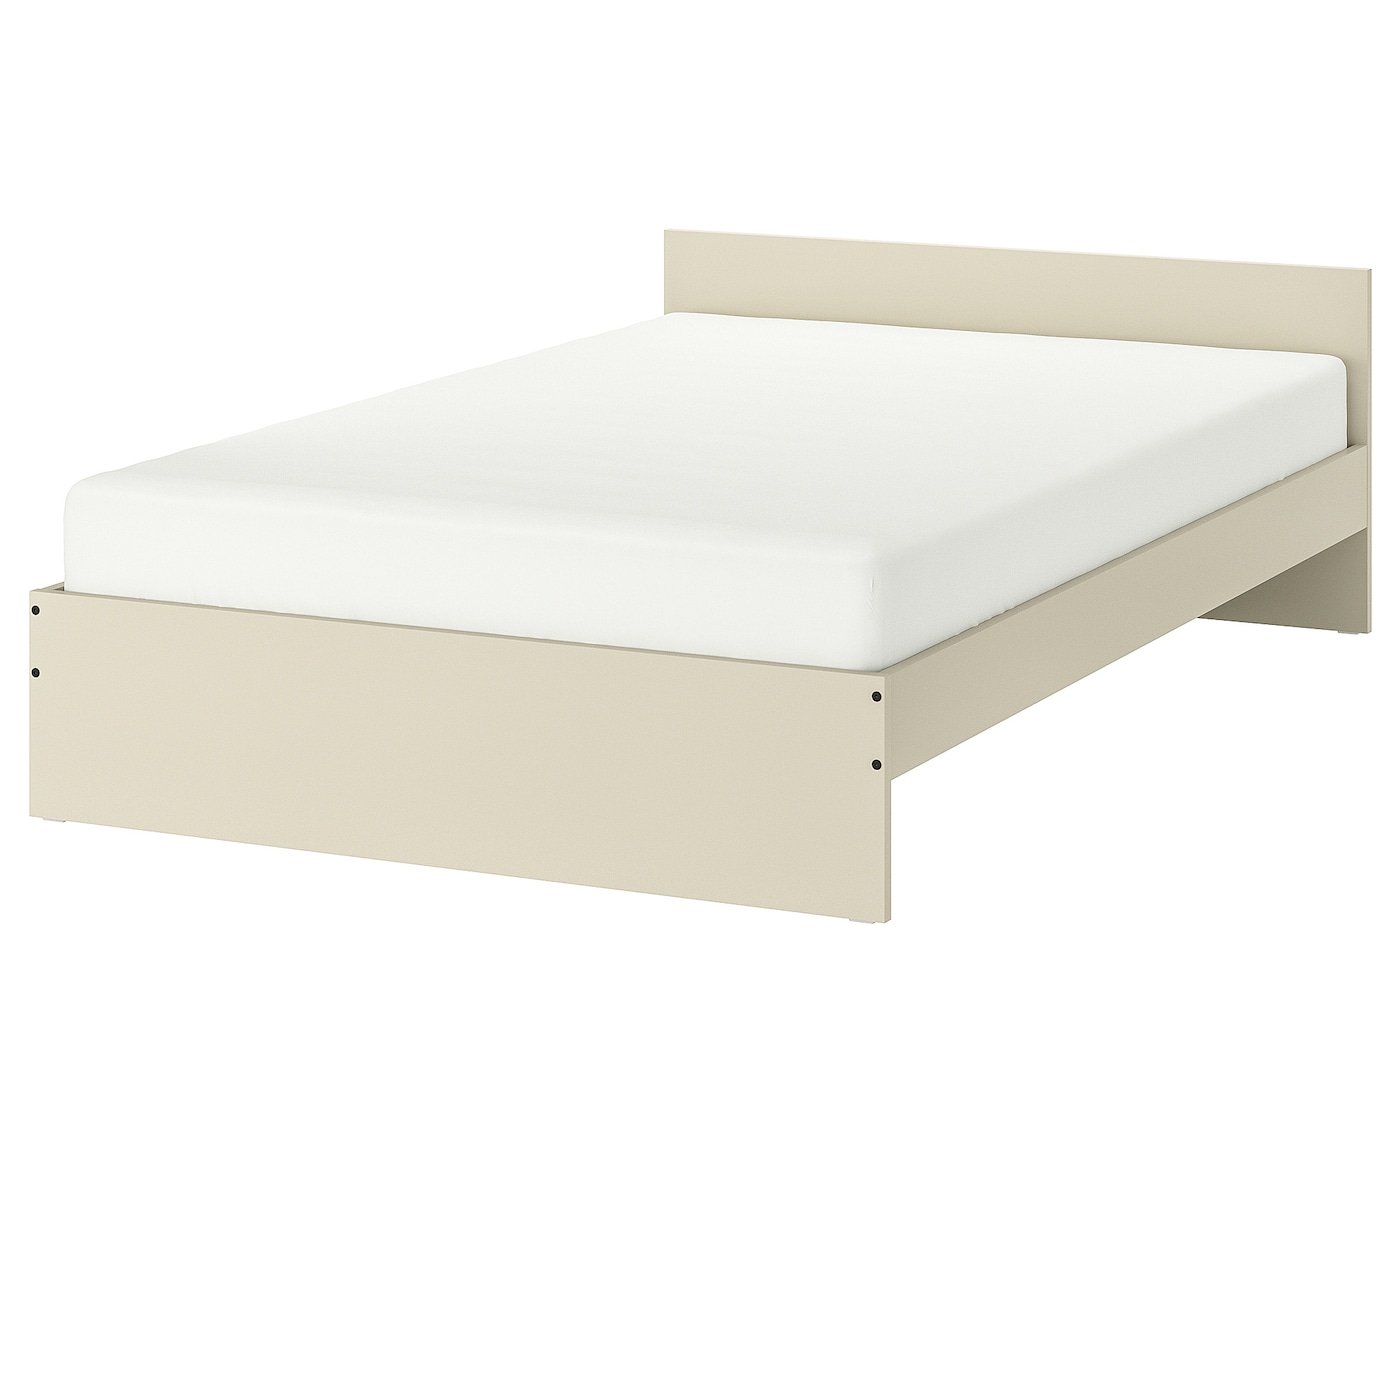 Двуспальная кровать - IKEA GURSKEN/LURÖY/LUROY, 200х140 см, бежевый, ГУРСКЕН/ЛУРОЙ ИКЕА